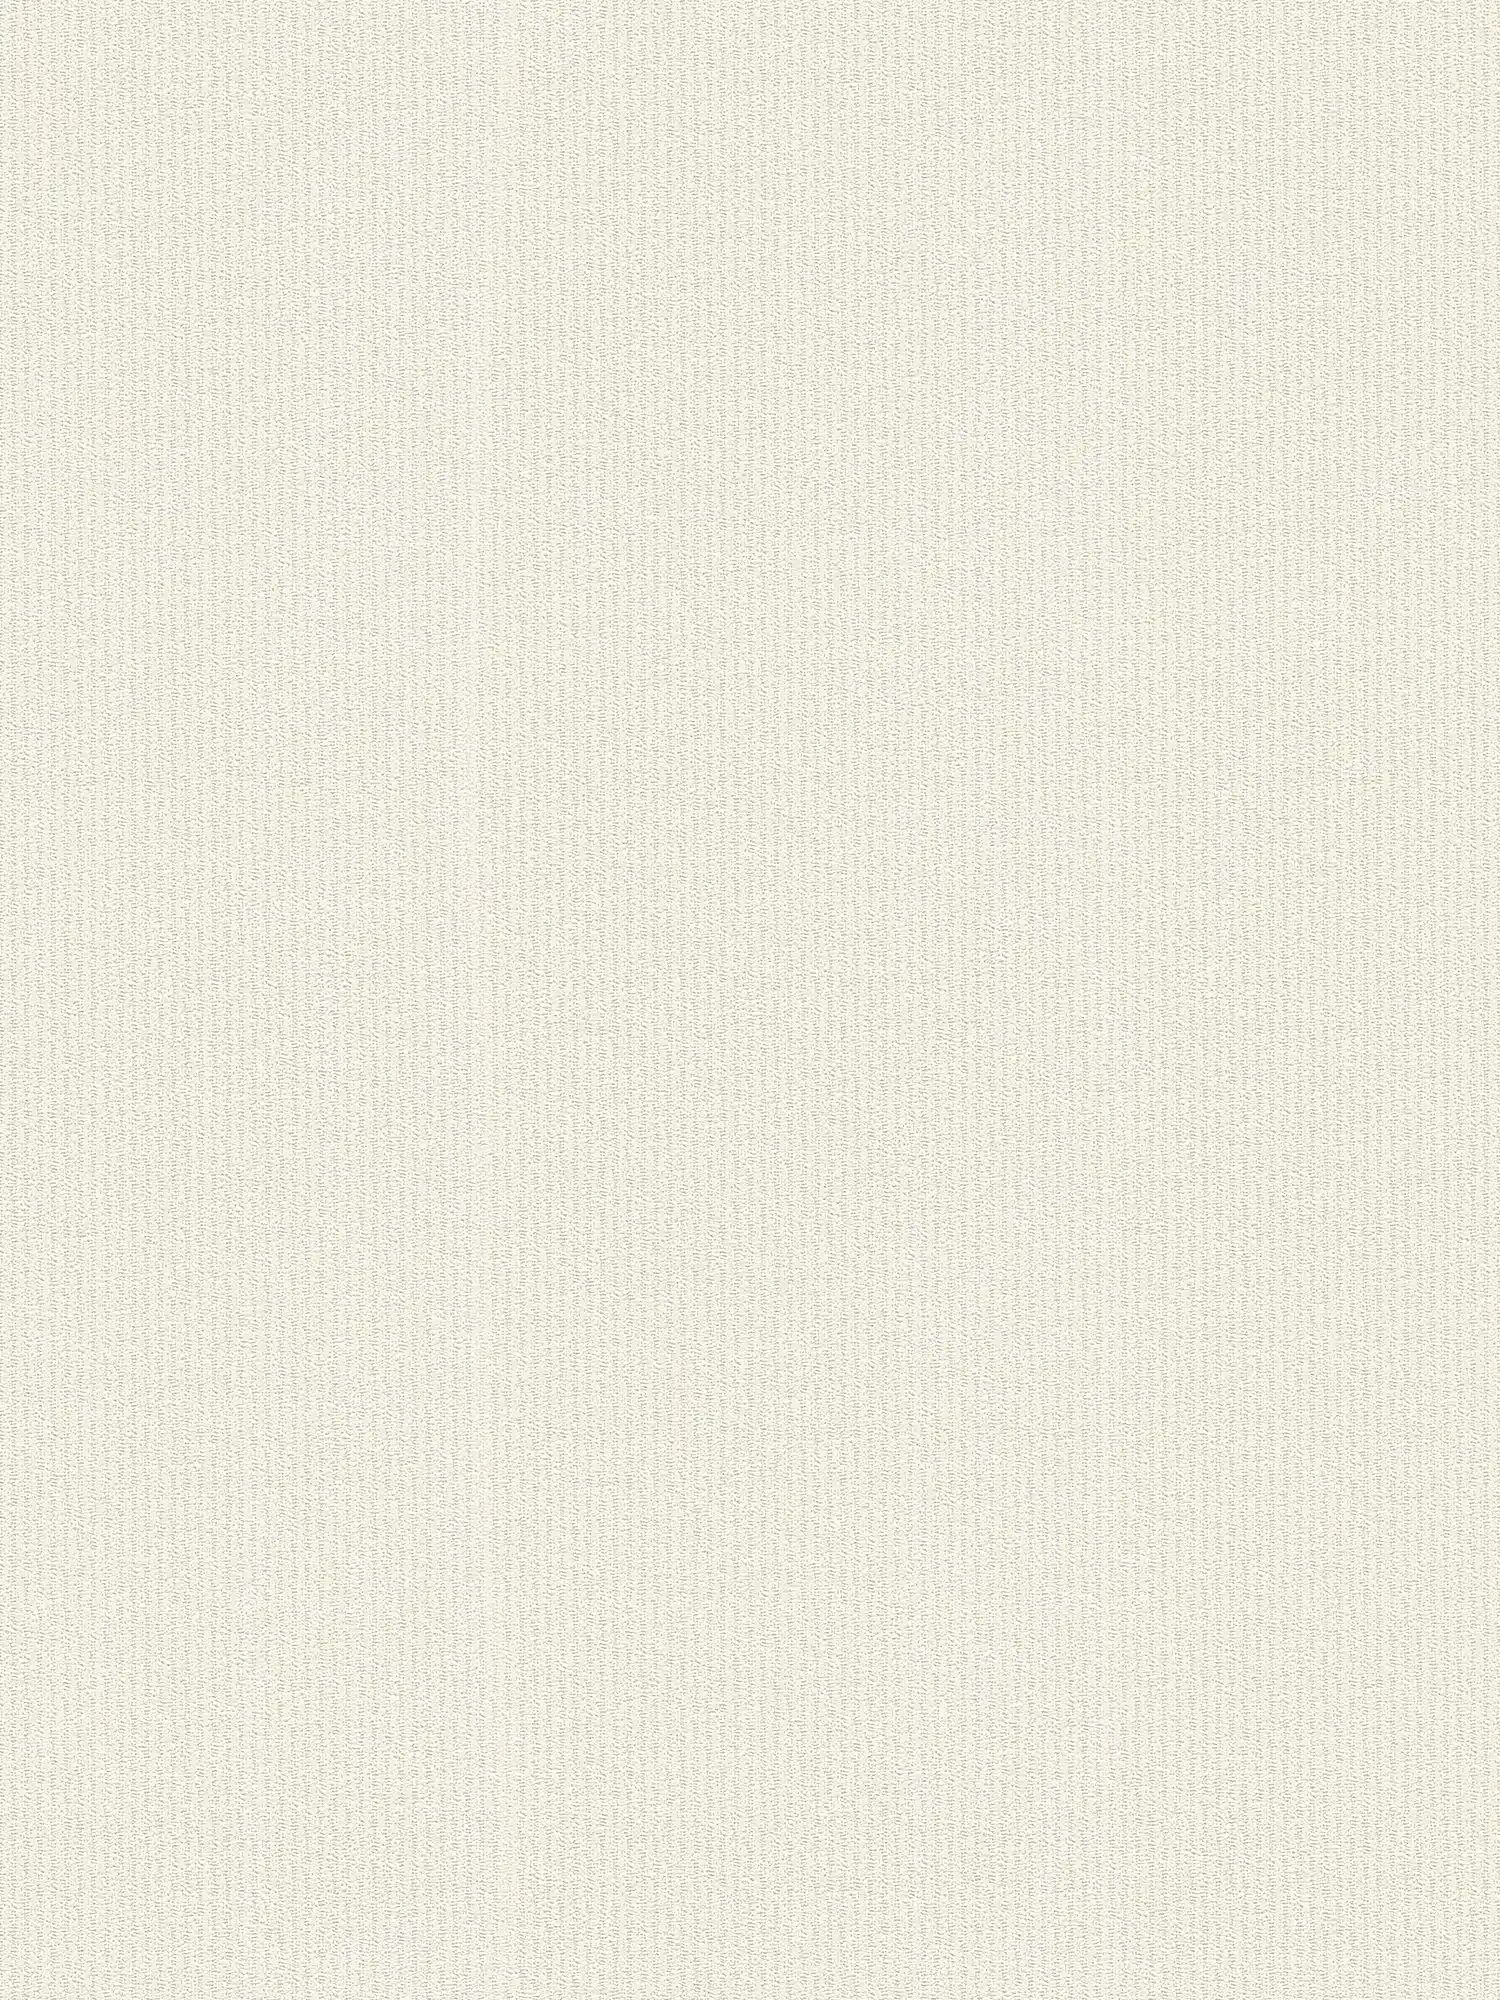 Carta da parati testurizzata con disegno a righe - crema, beige
